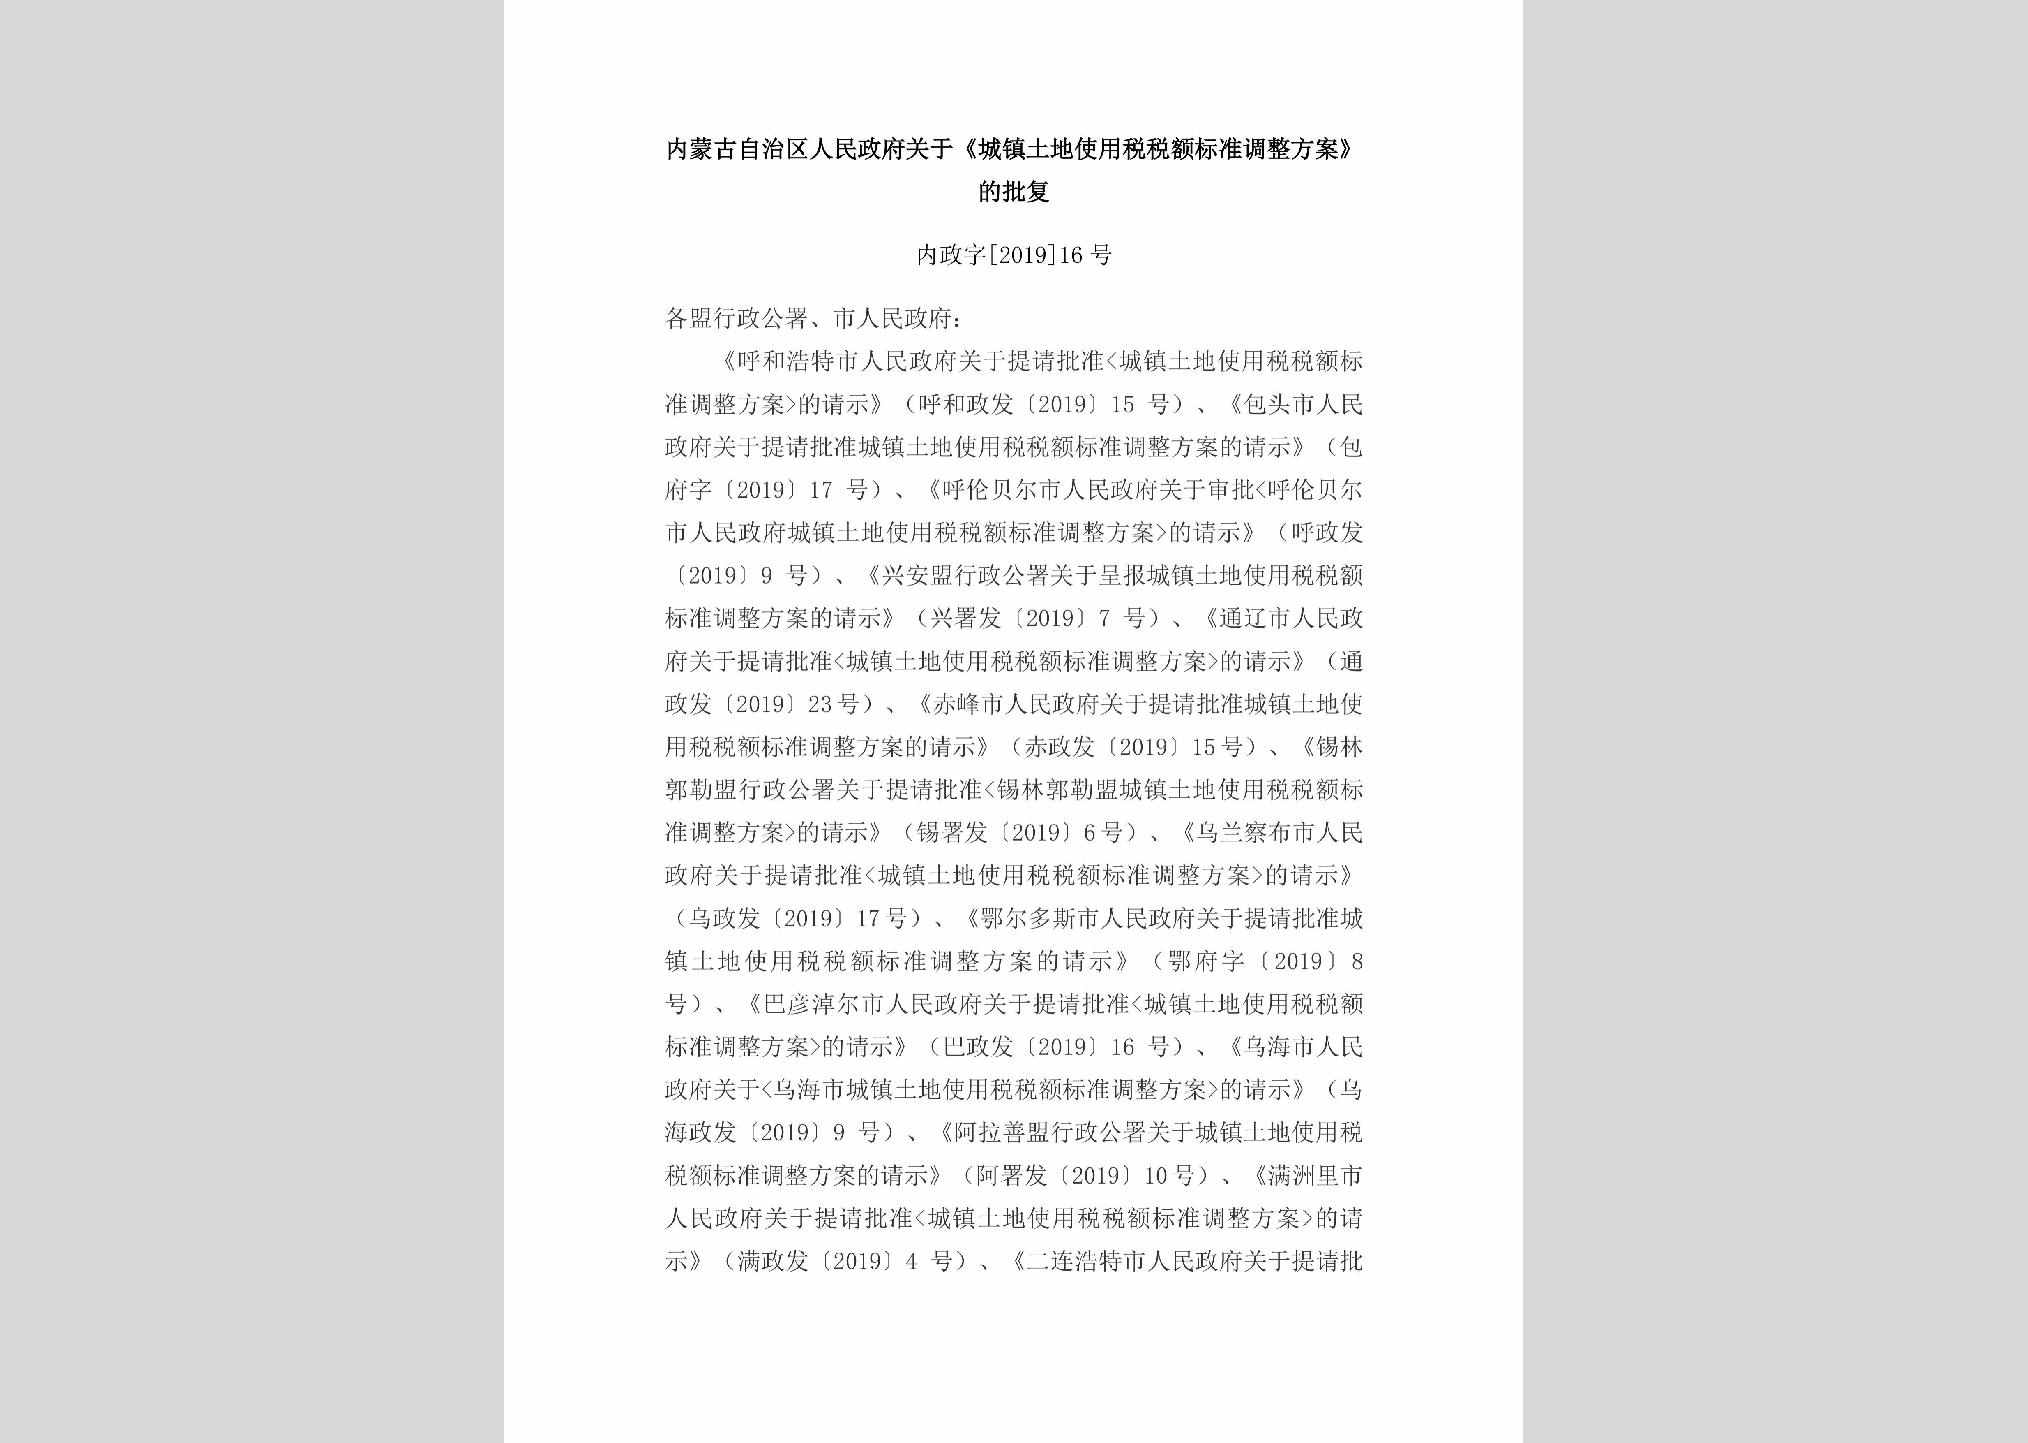 内政字[2019]16号：内蒙古自治区人民政府关于《城镇土地使用税税额标准调整方案》的批复